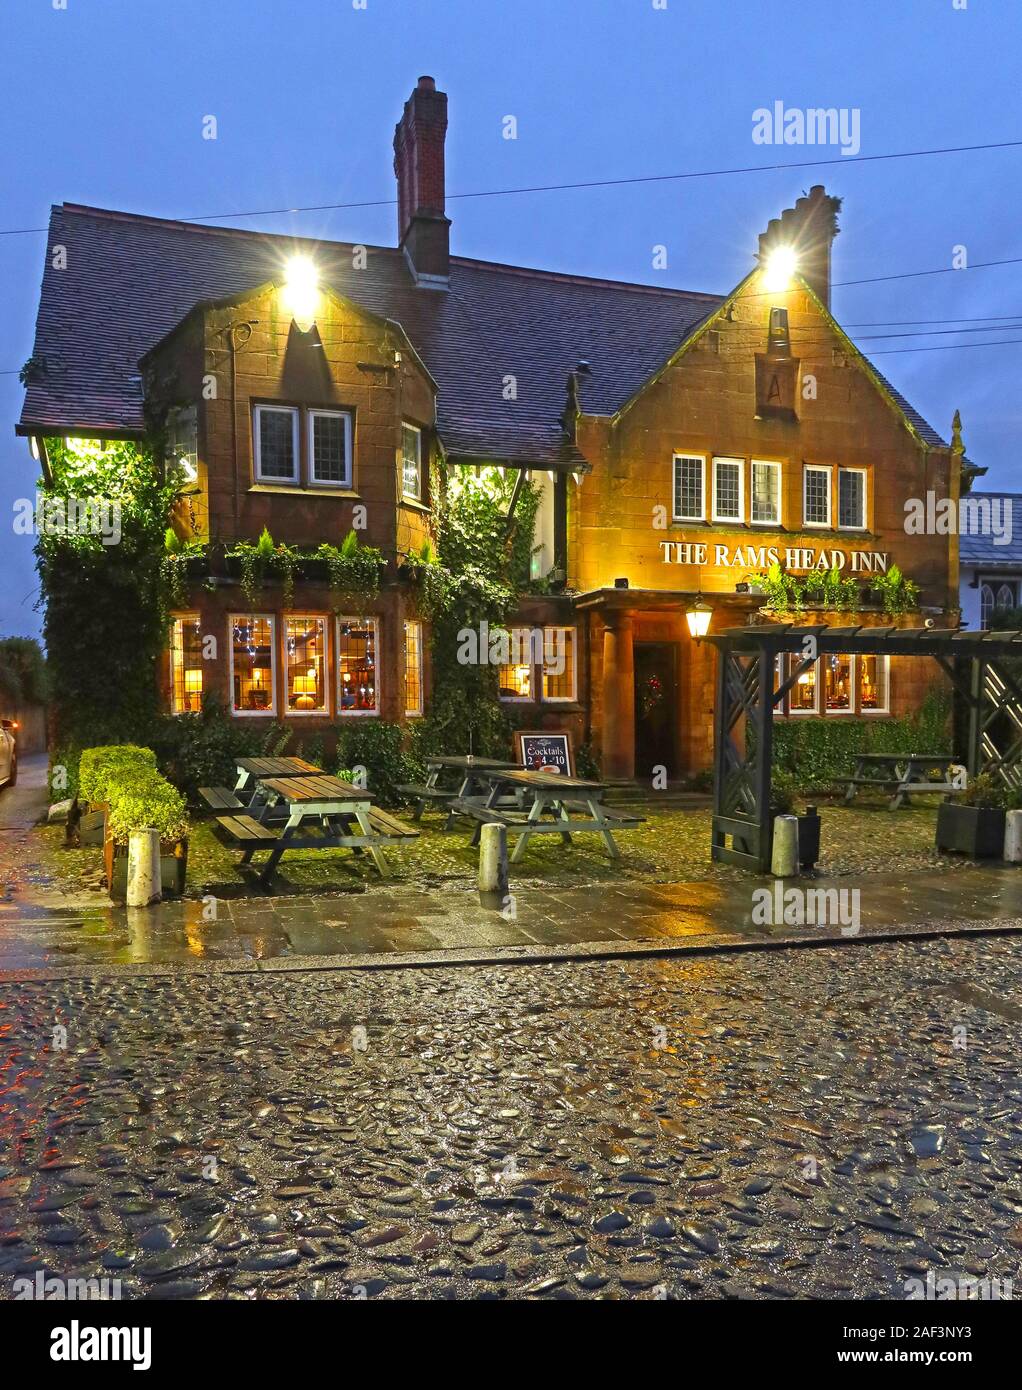 Rams Head Pub et pavées, Church Lane, Grappenhall village, Warrington, Cheshire, Angleterre, Royaume-Uni, WA4 3EP, Banque D'Images